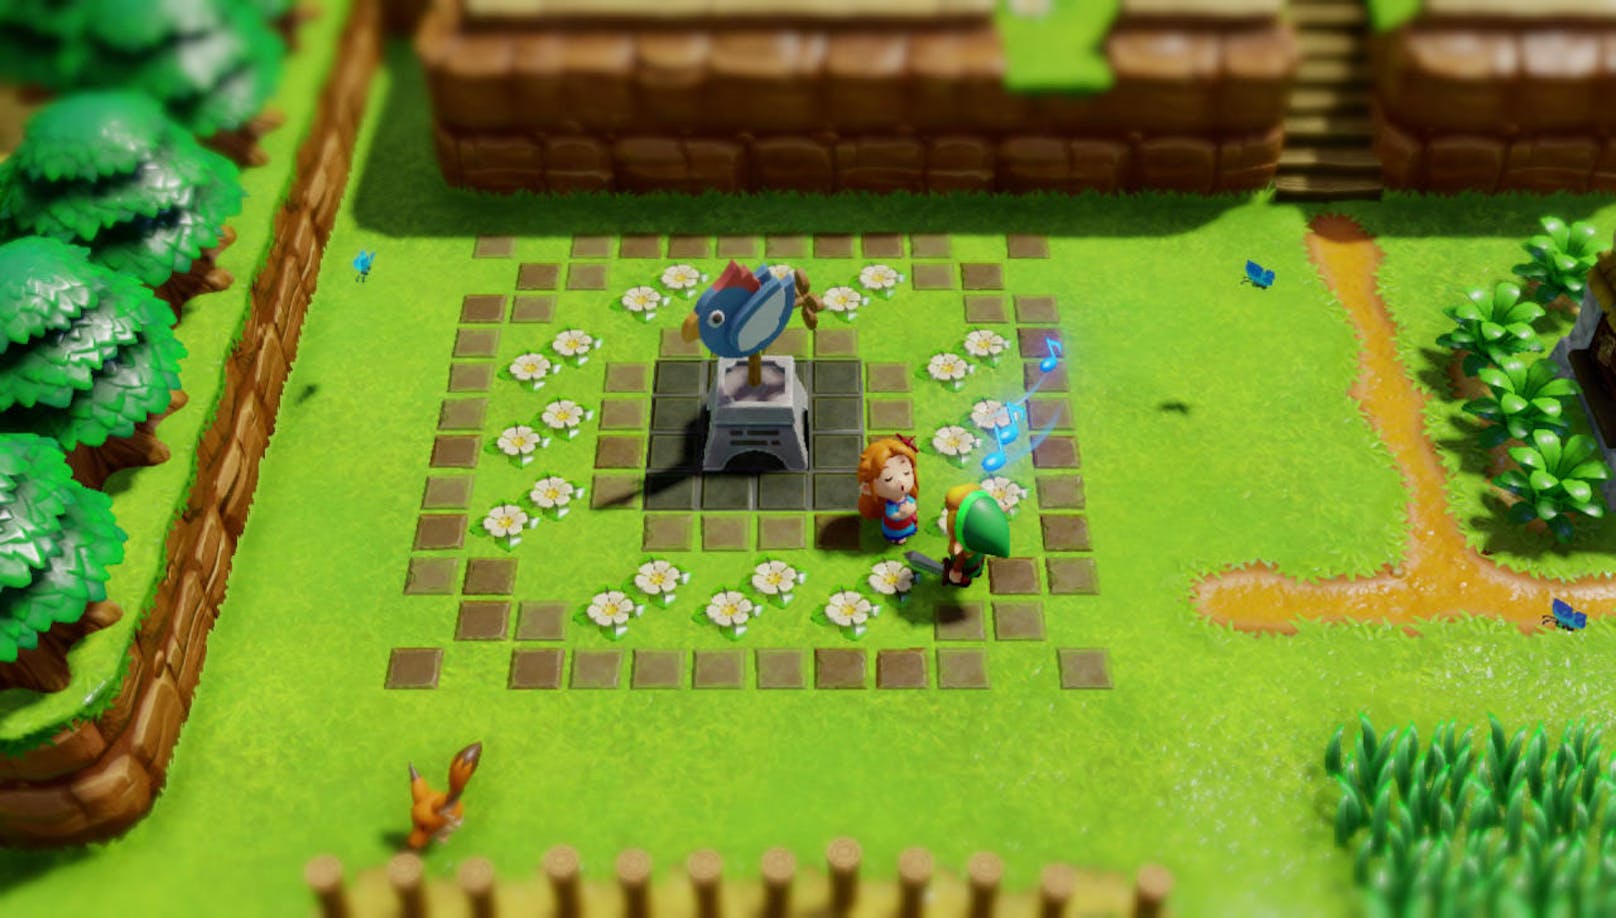 Das Game wurde von Grund auf neu entwickelt und besticht nun mit putziger Diorama-Grafik. Held Link sieht plötzlich aus wie eine kleine Spielzeugfigur und strandet auf der Insel Cocolint.